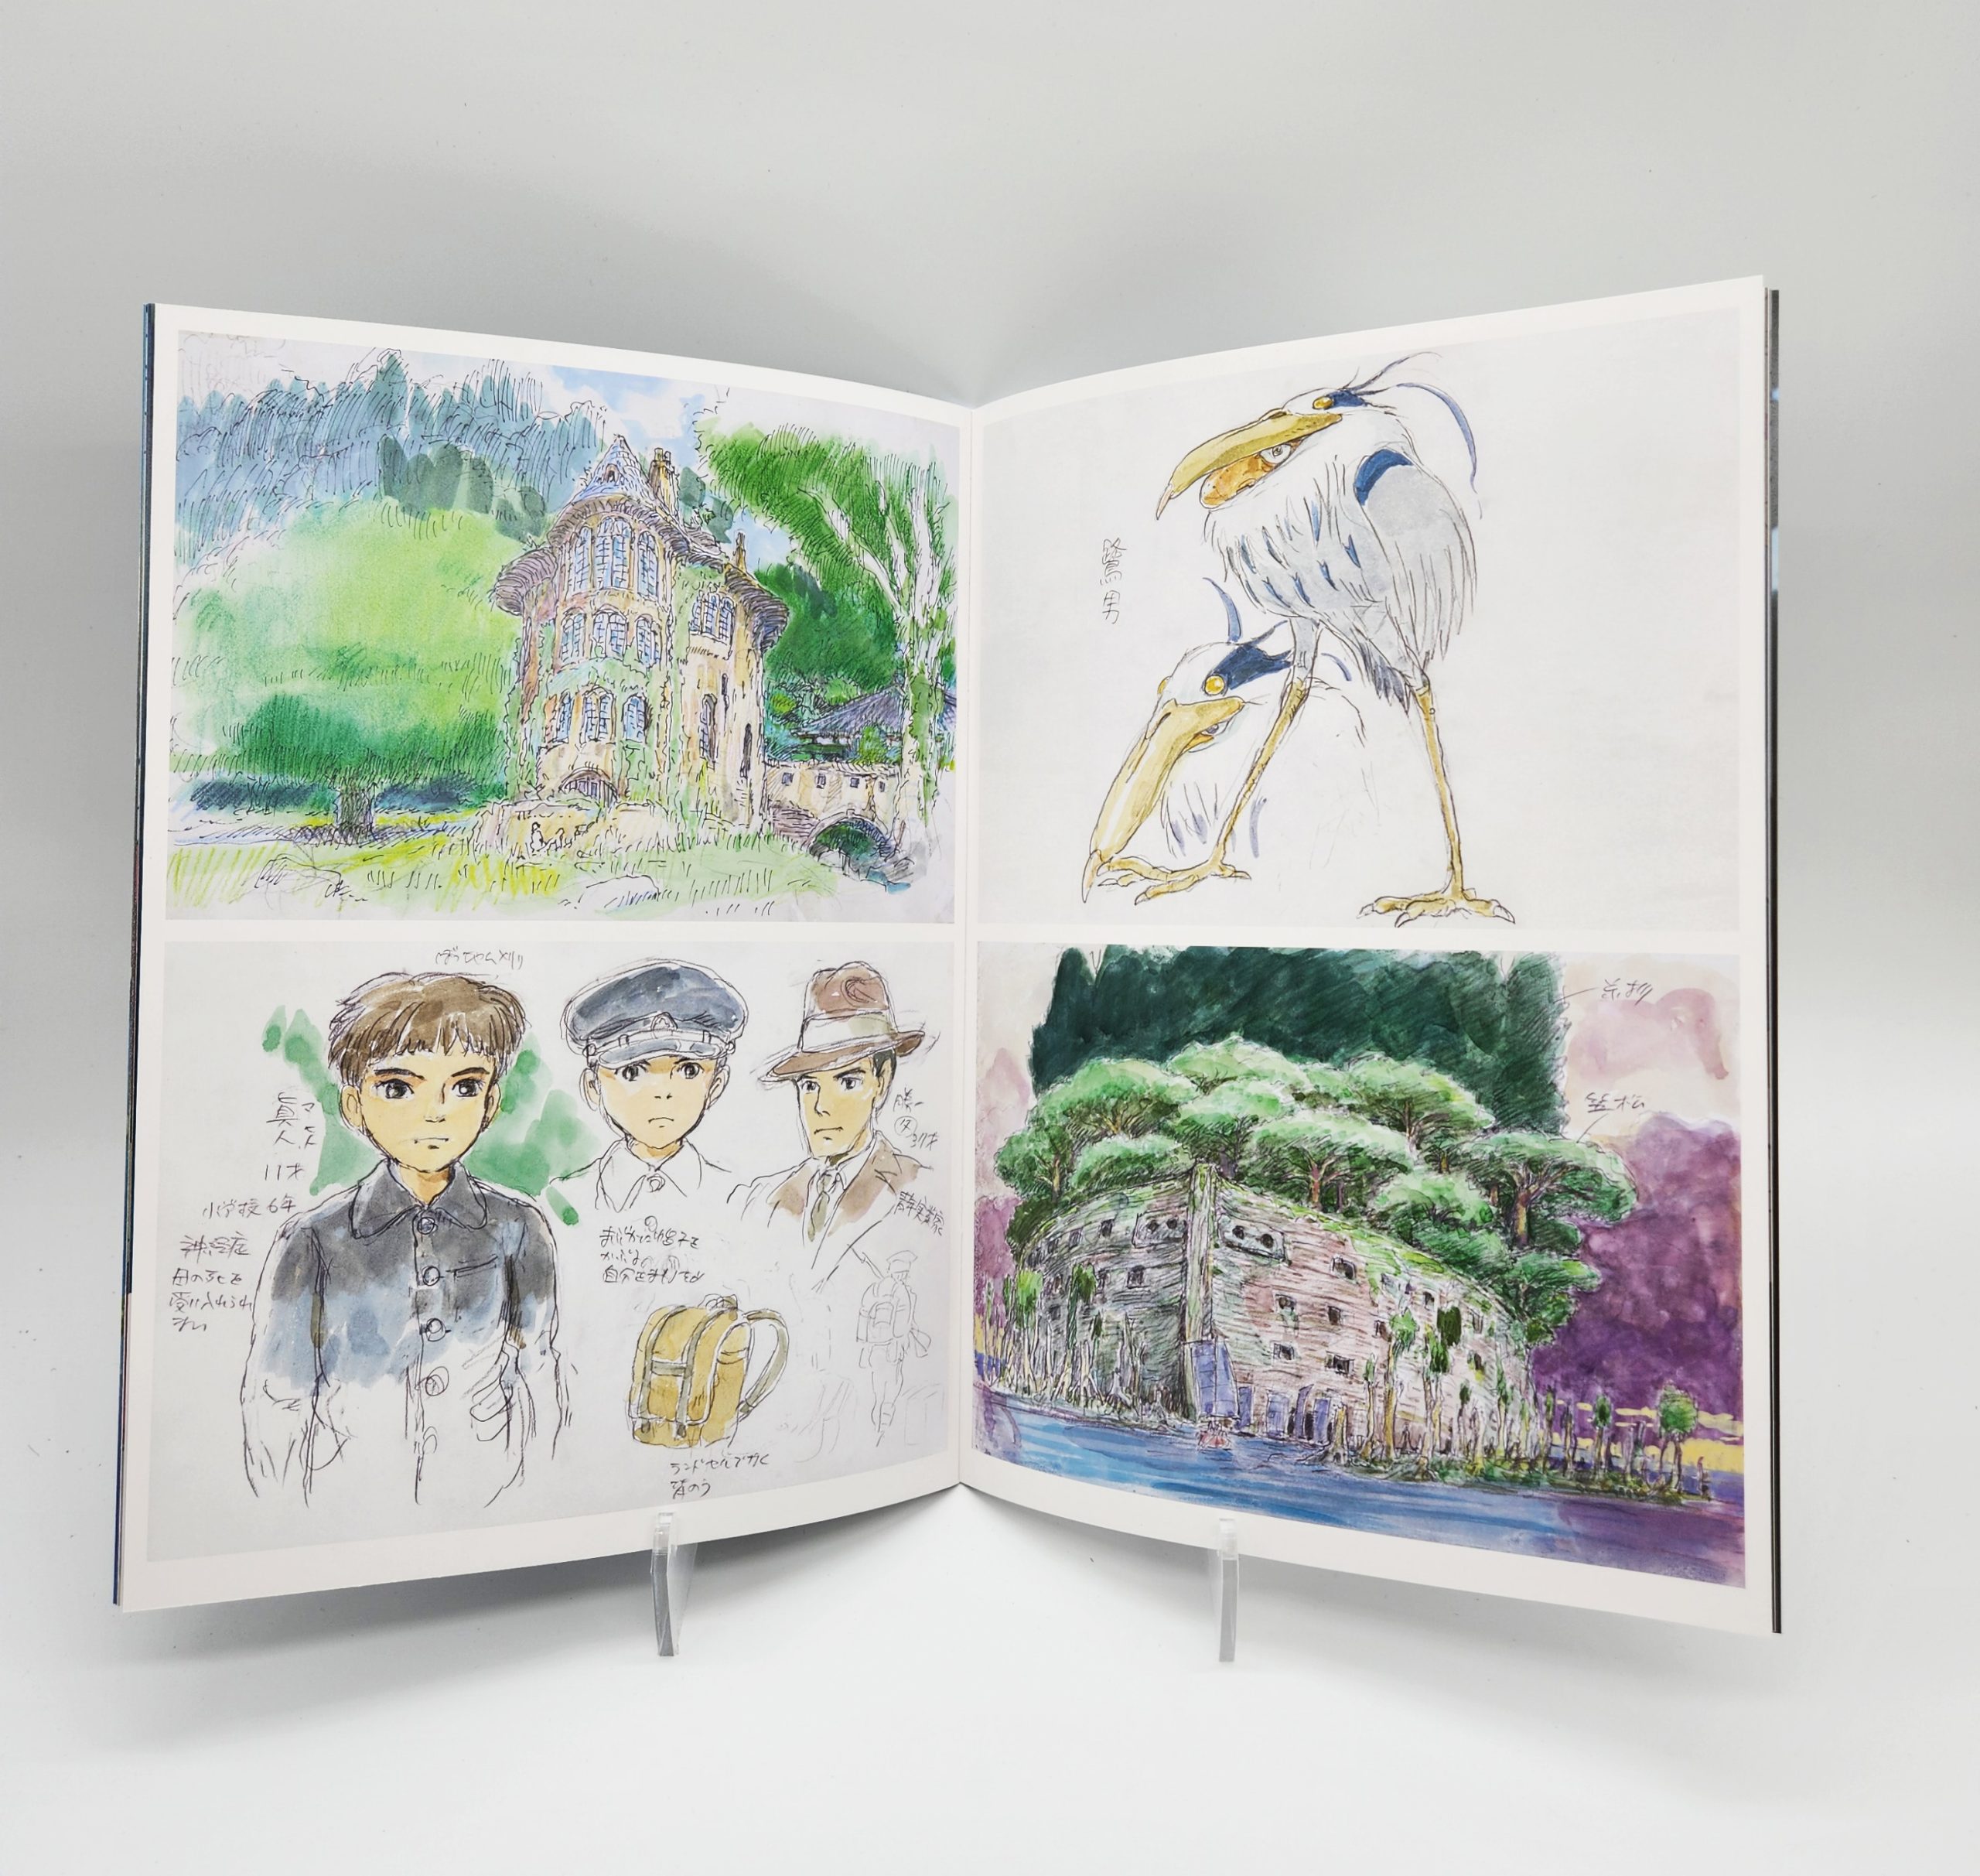 Le garçon et le héron » de Miyazaki s'inspire d'un livre